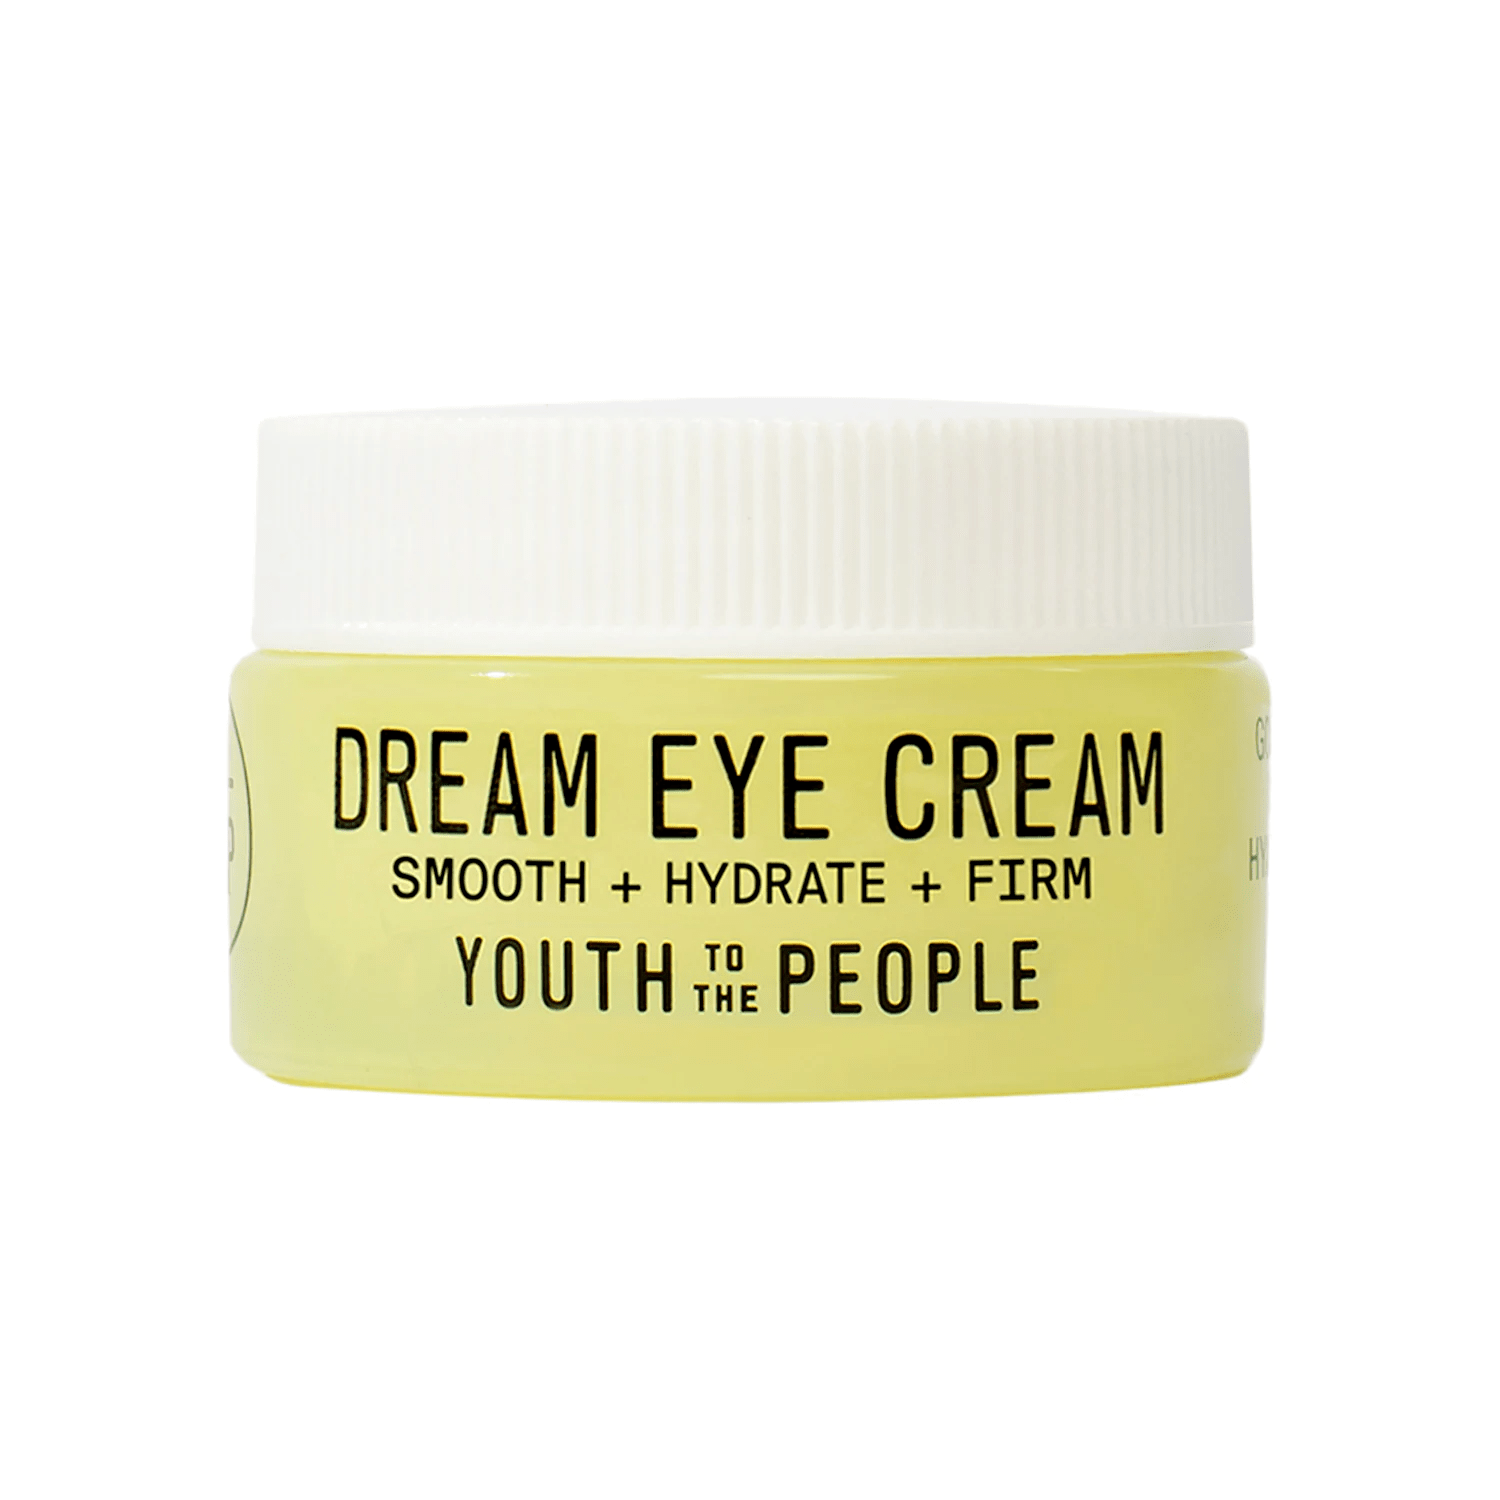 Dream Eye Cream trial size